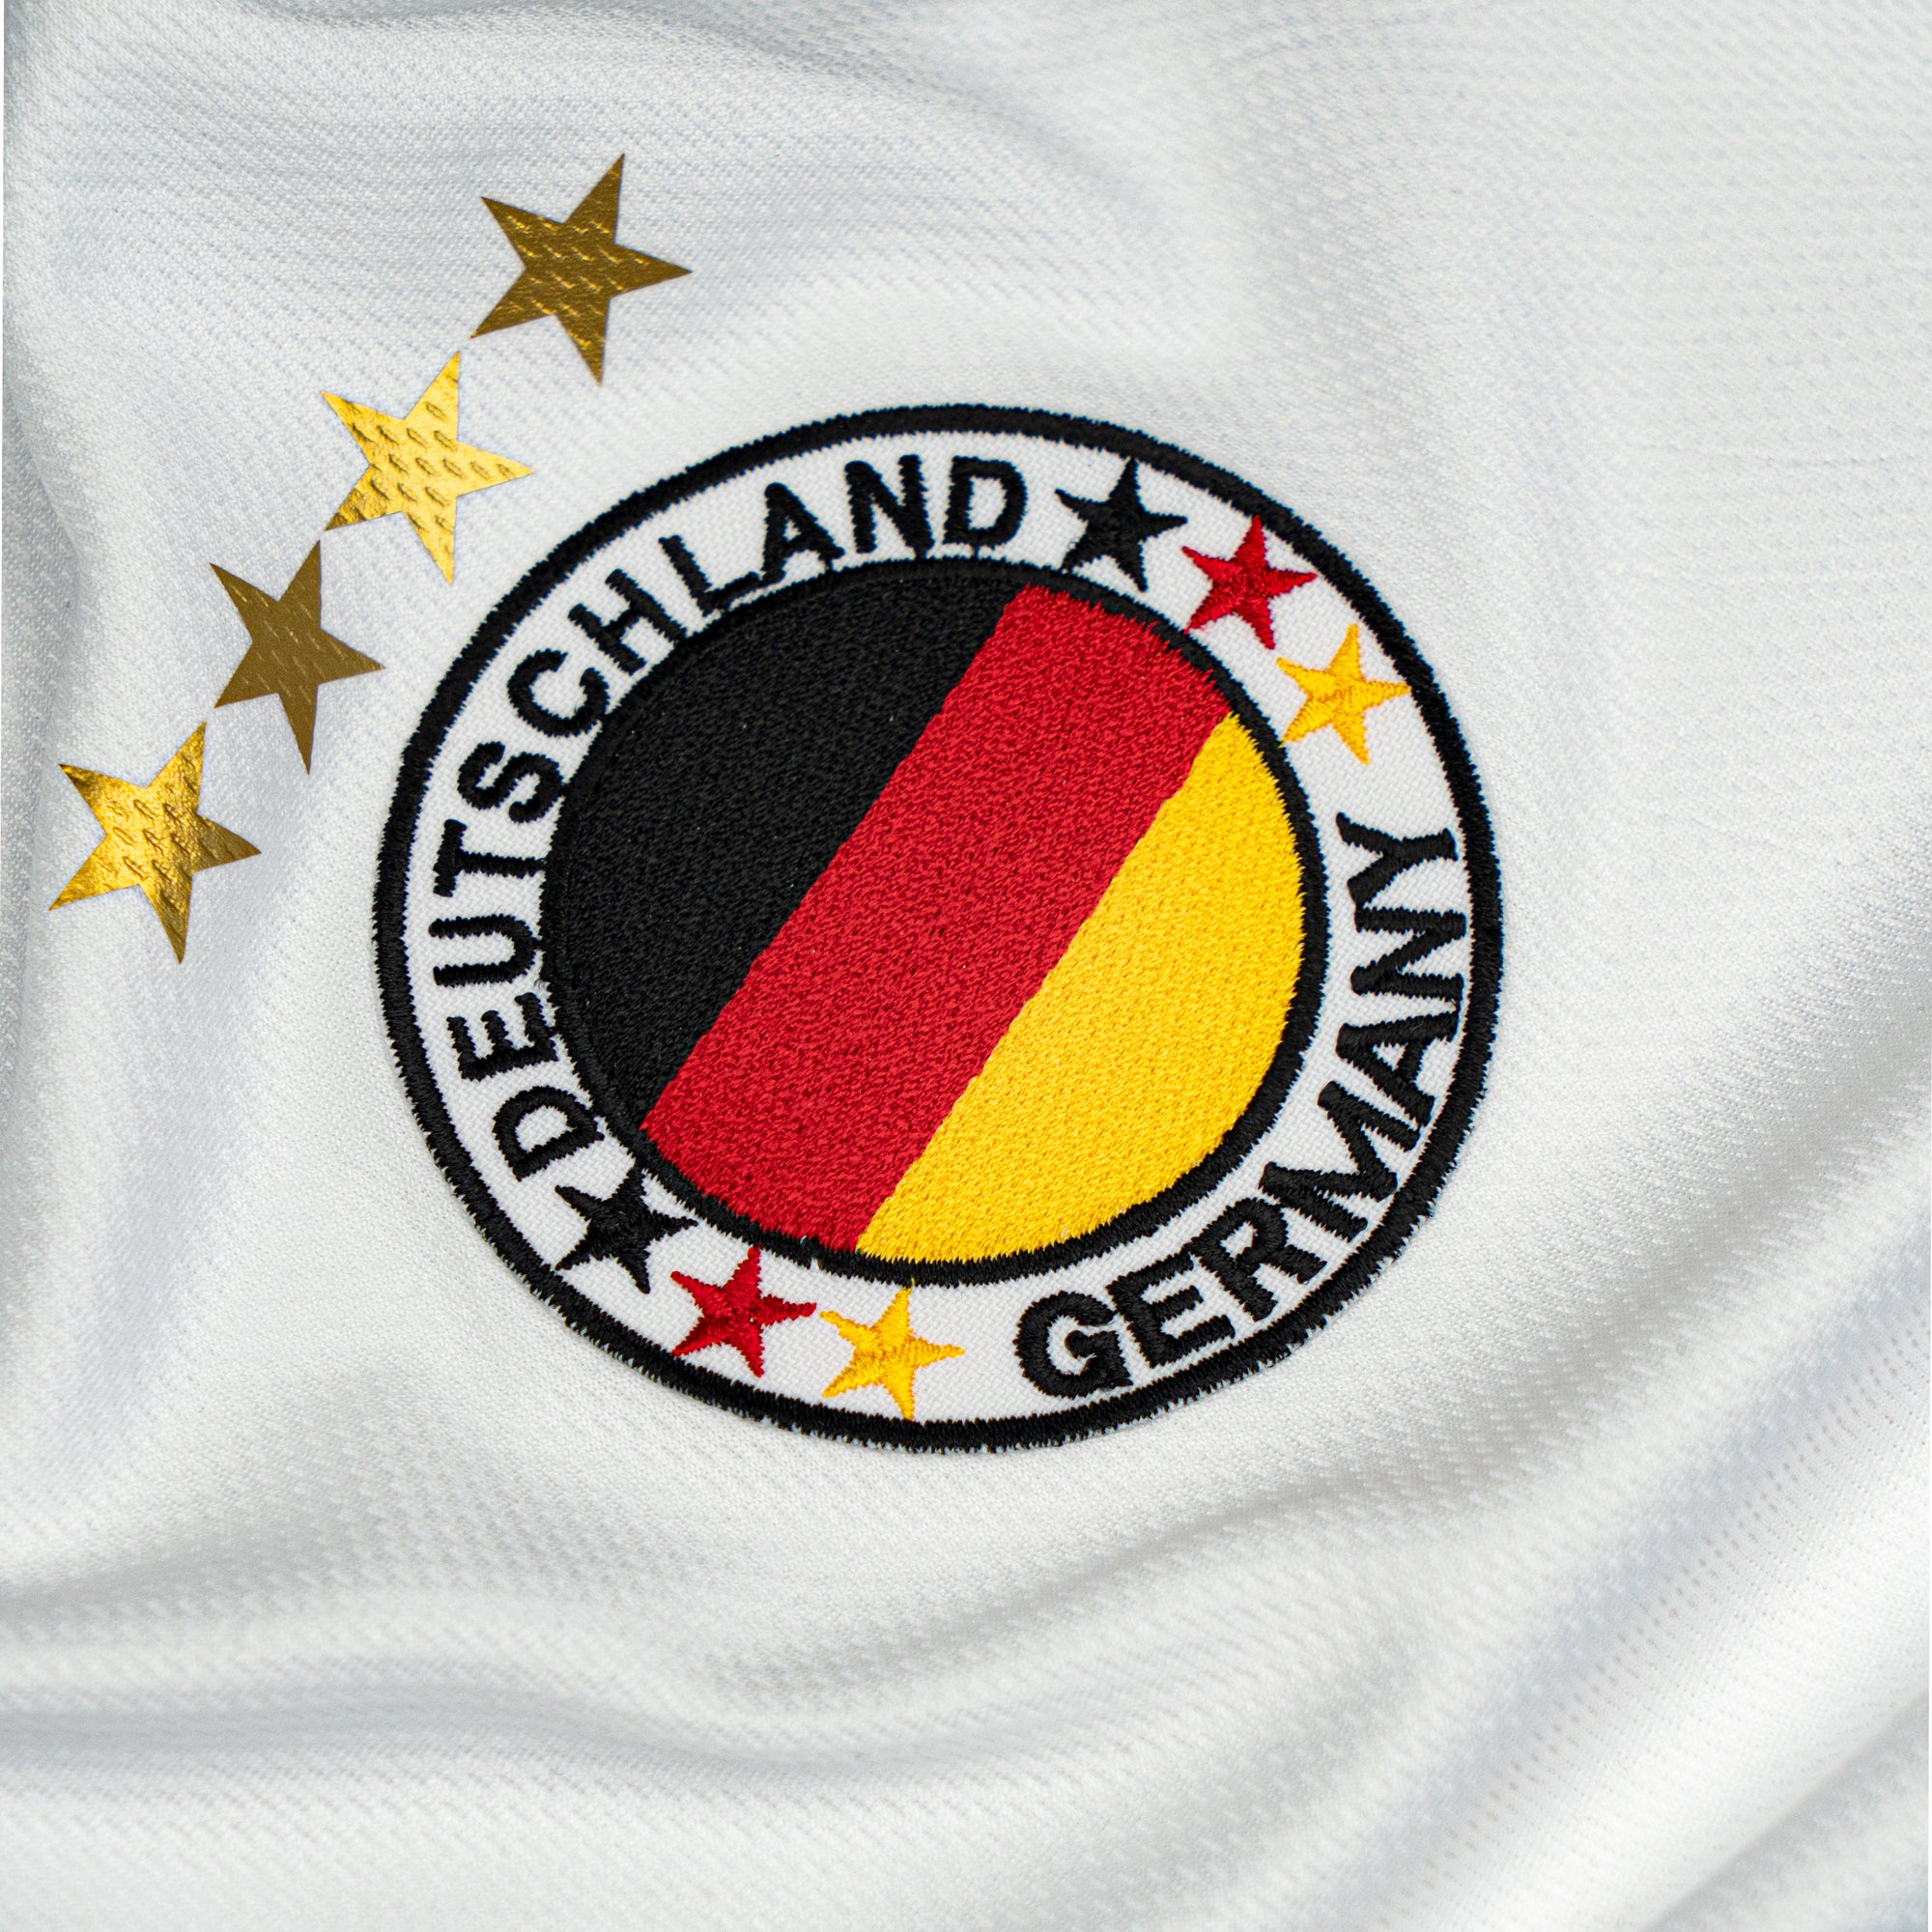 Personalisiertes Deutschland Fußball Set für Kinder Trikot mit Hose